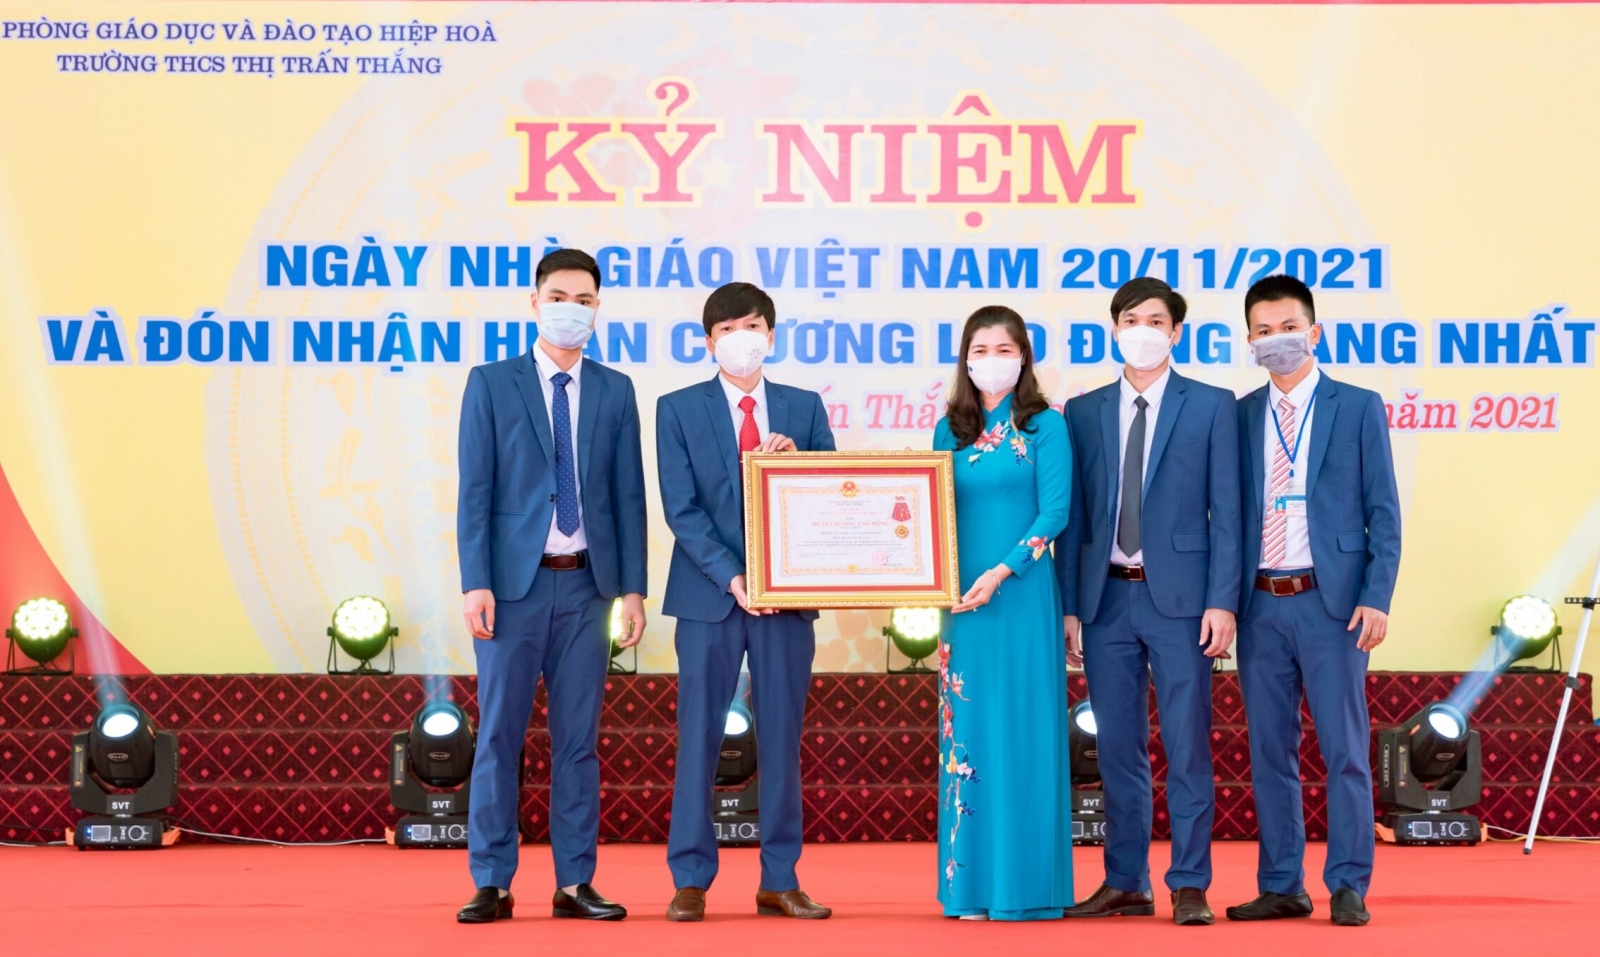 Bắc Giang: Trường THCS Thị trấn Thắng đón nhận Huân chương Lao động hạng Nhất